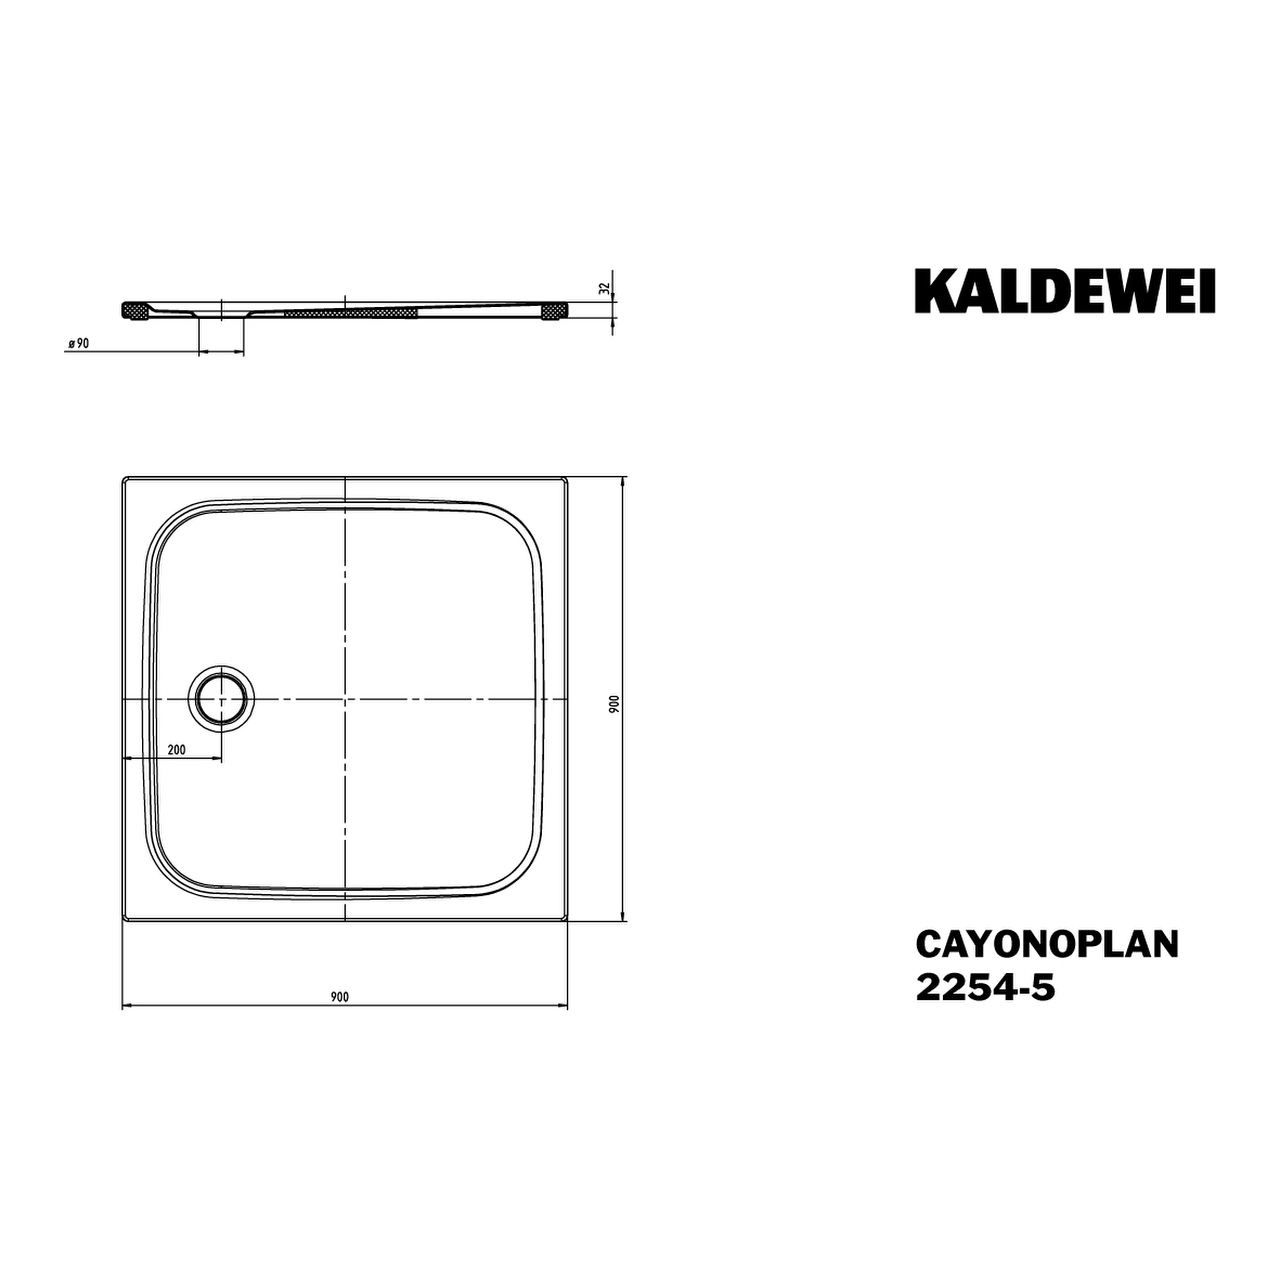 Kaldewei quadrat Duschwanne „Cayonoplan“ 90 × 90 cm in warm beige 20